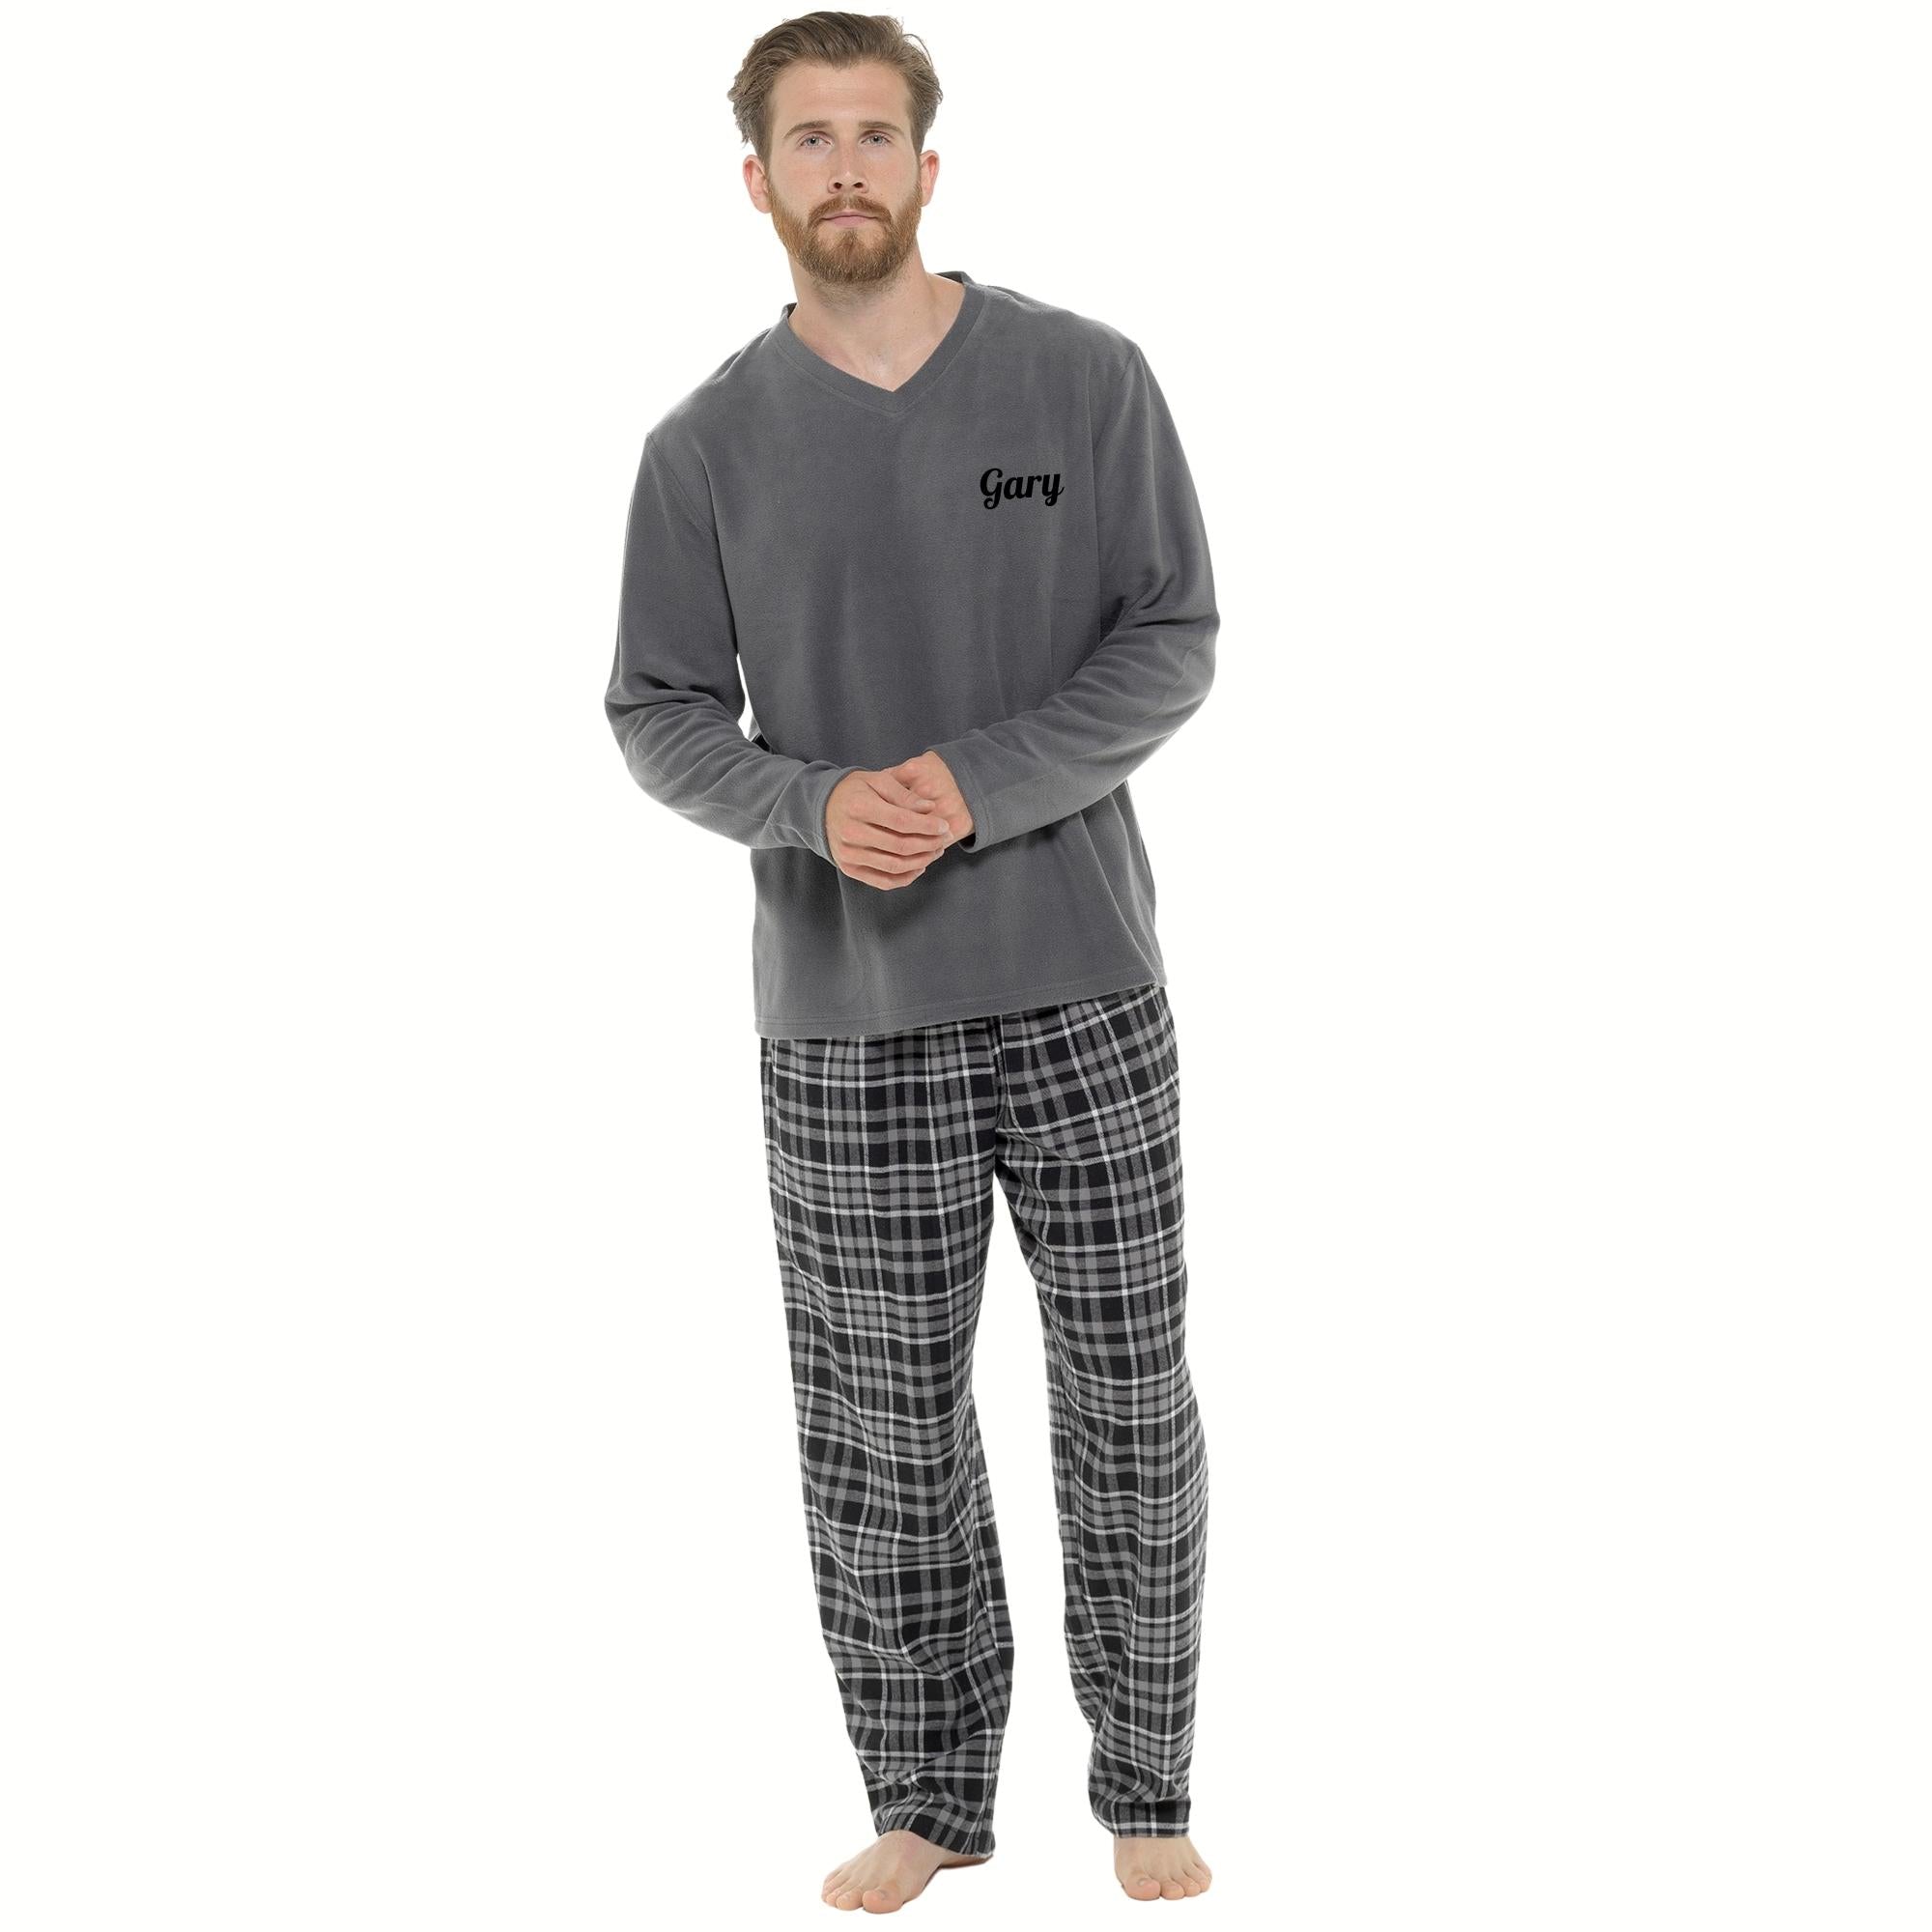 Grey Flannel Check Pants Pyjamas